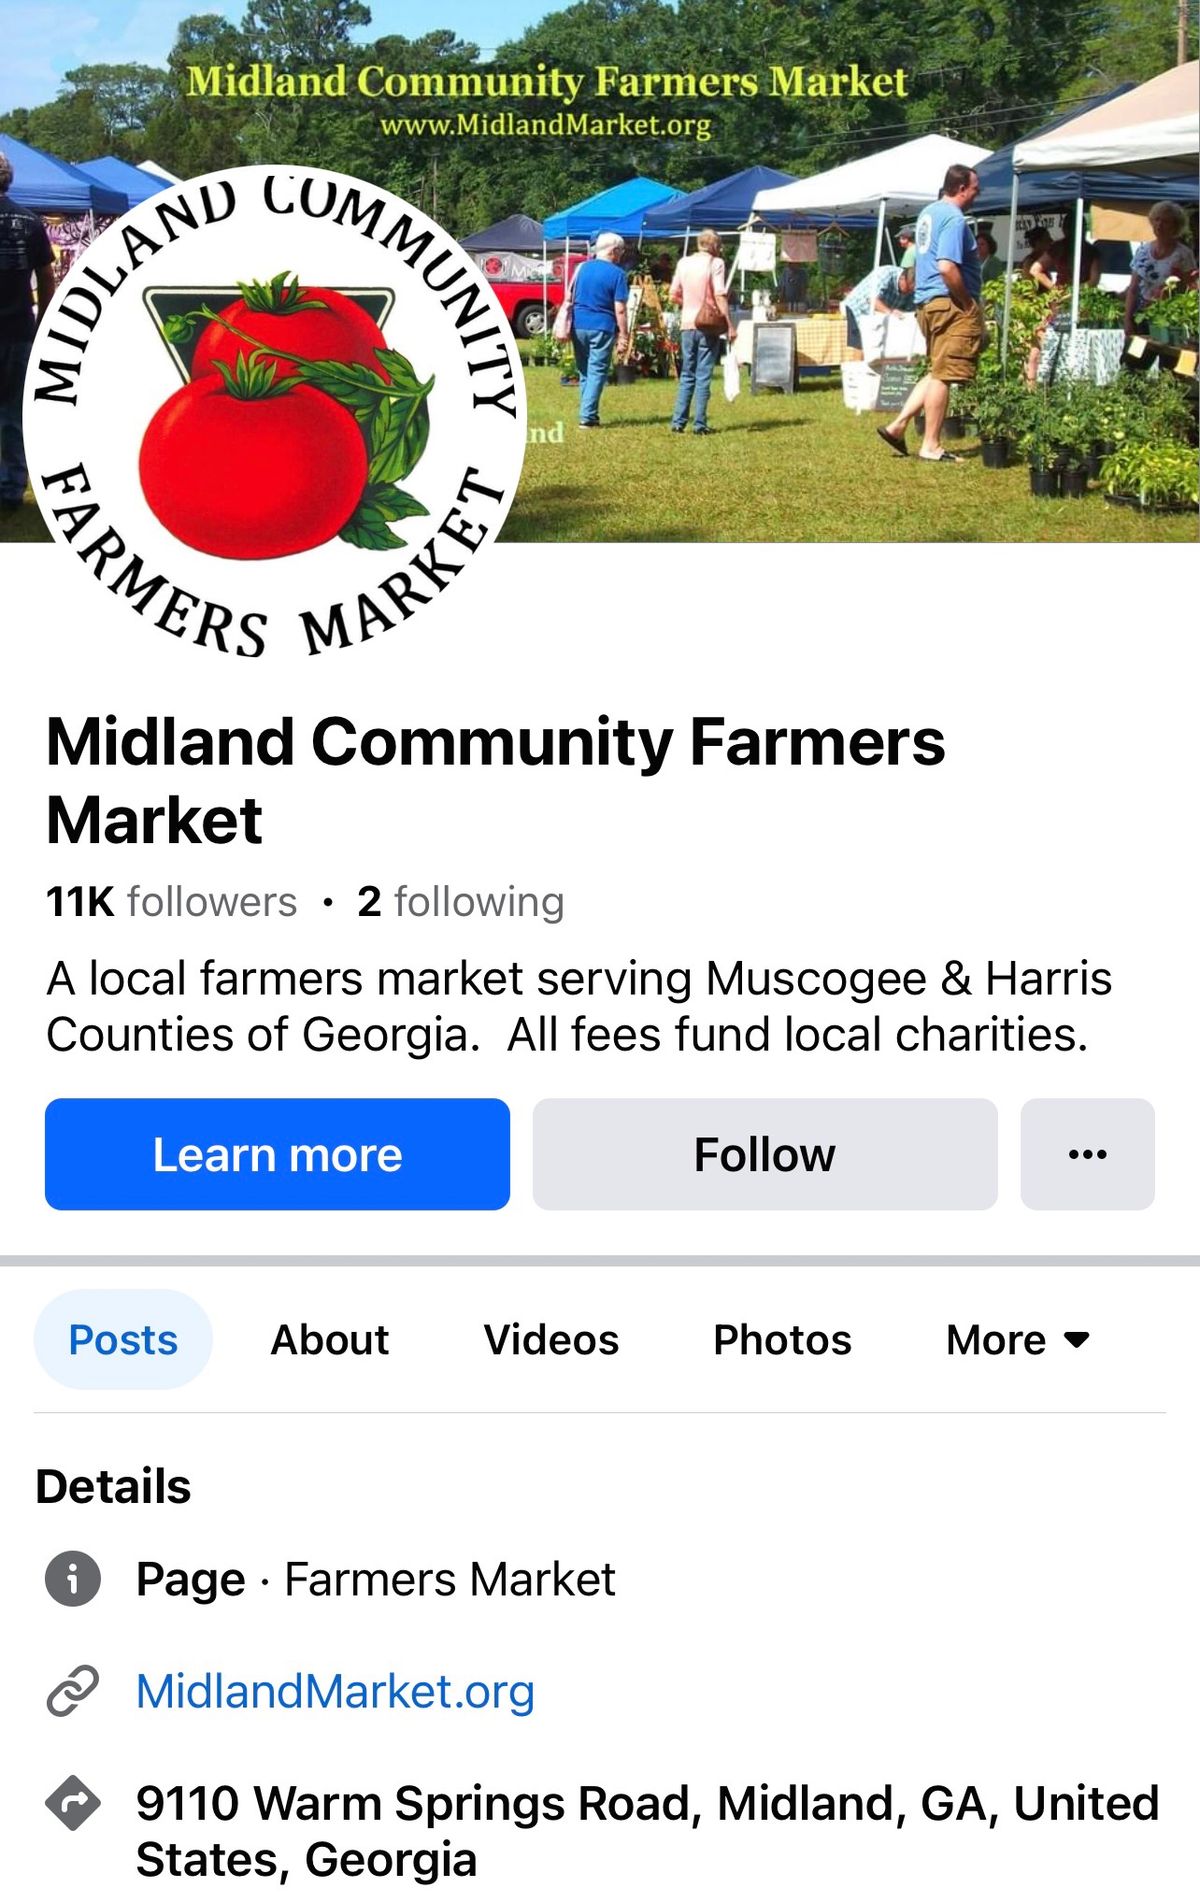 Tmom's Farm Treats at Midland Community Farmers Market